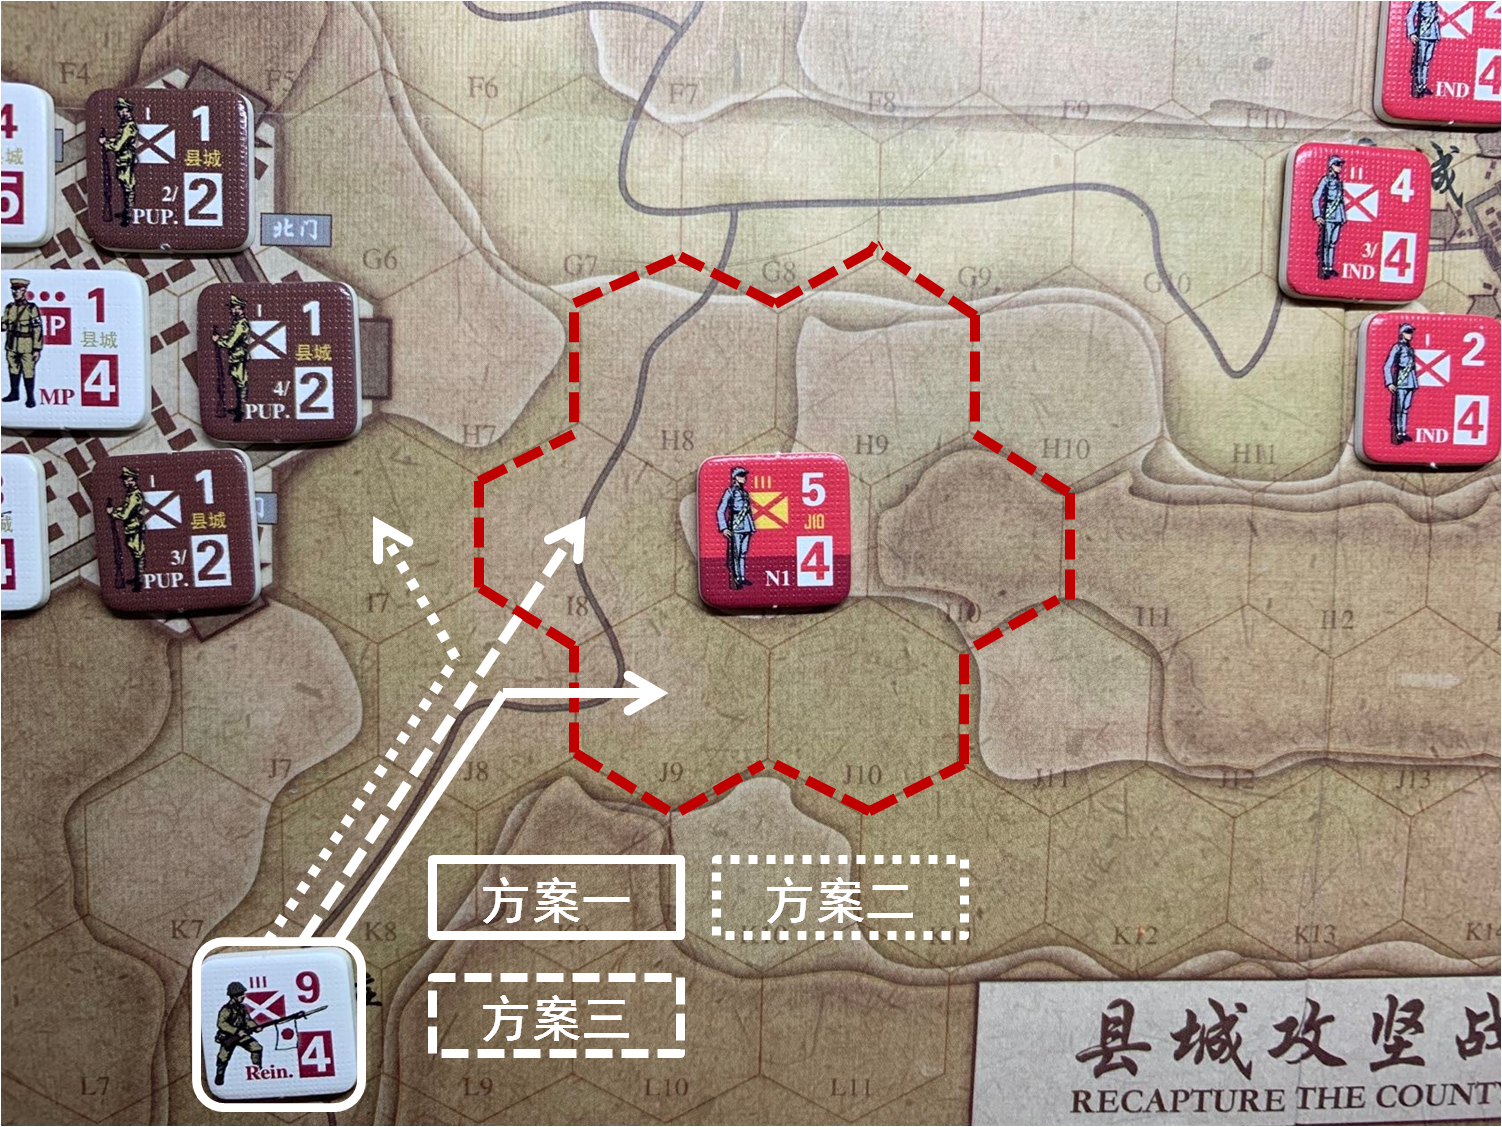 第一回合共军正规军部队N1对于移动命令5的执行结果，及随后本回合日方移动阶段赵庄方向日军增援部队可能的移动方案